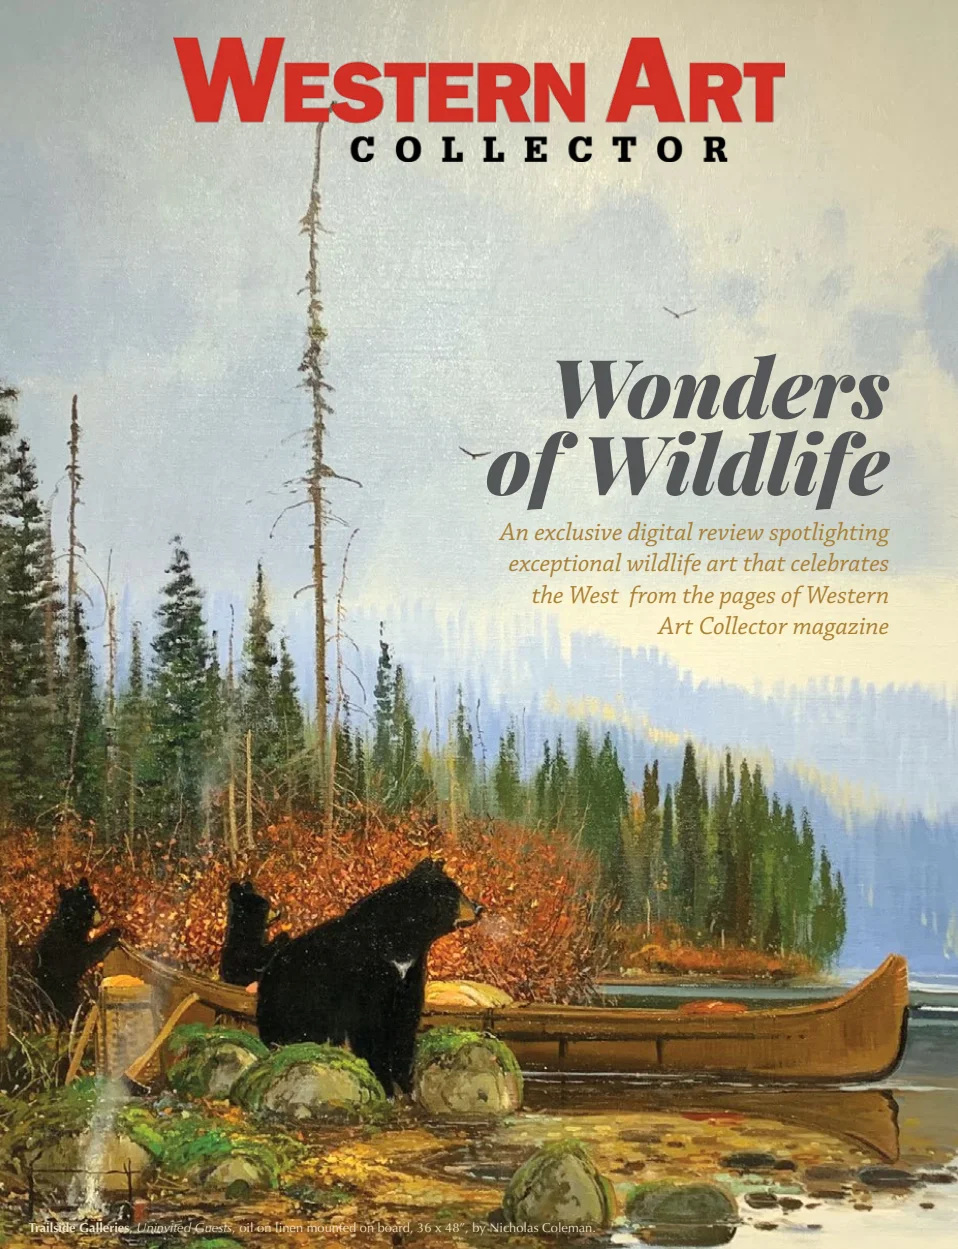 Western Art Collector - Wonders of Wildlife